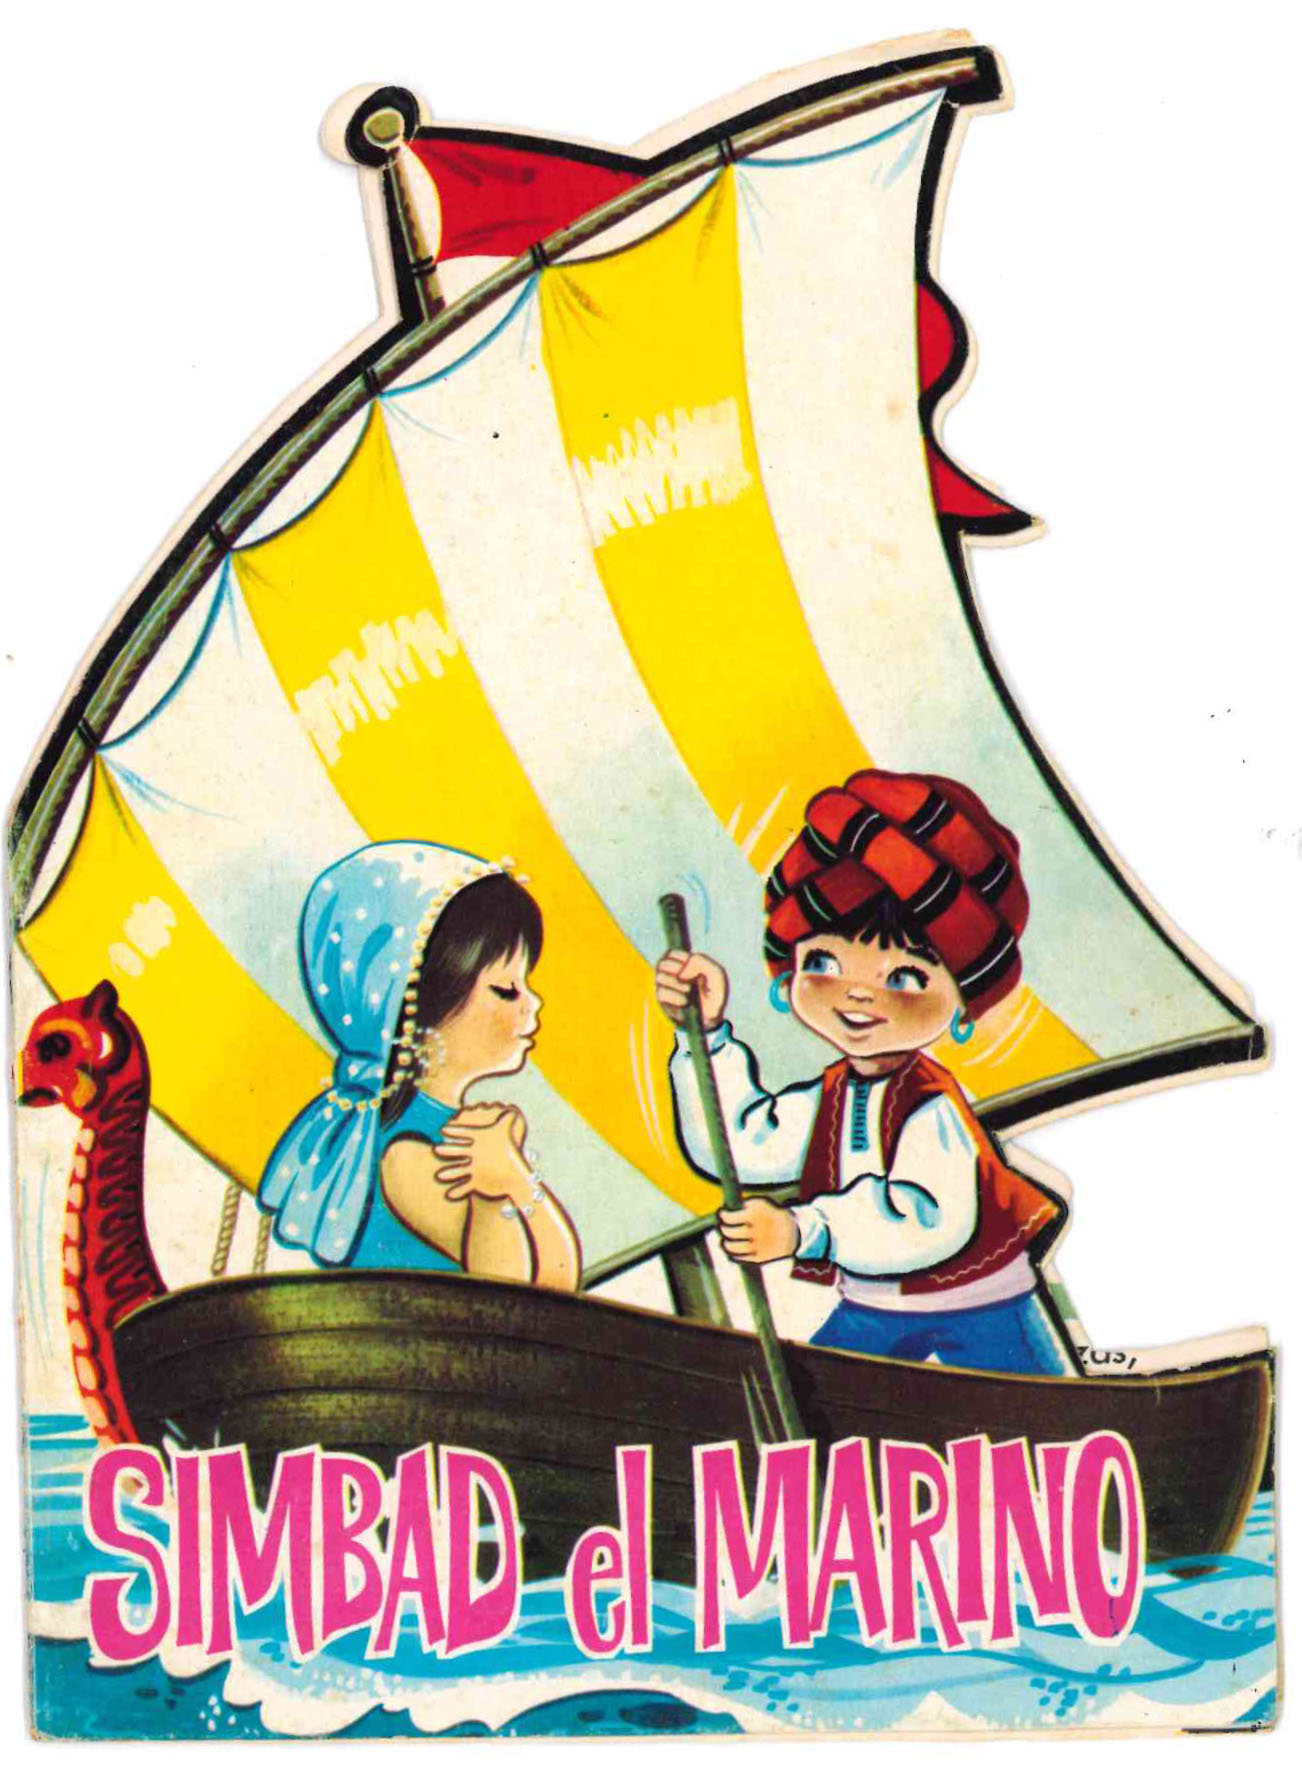 Cuento Troquelado Simbad el marino. Editorial Fema 1966